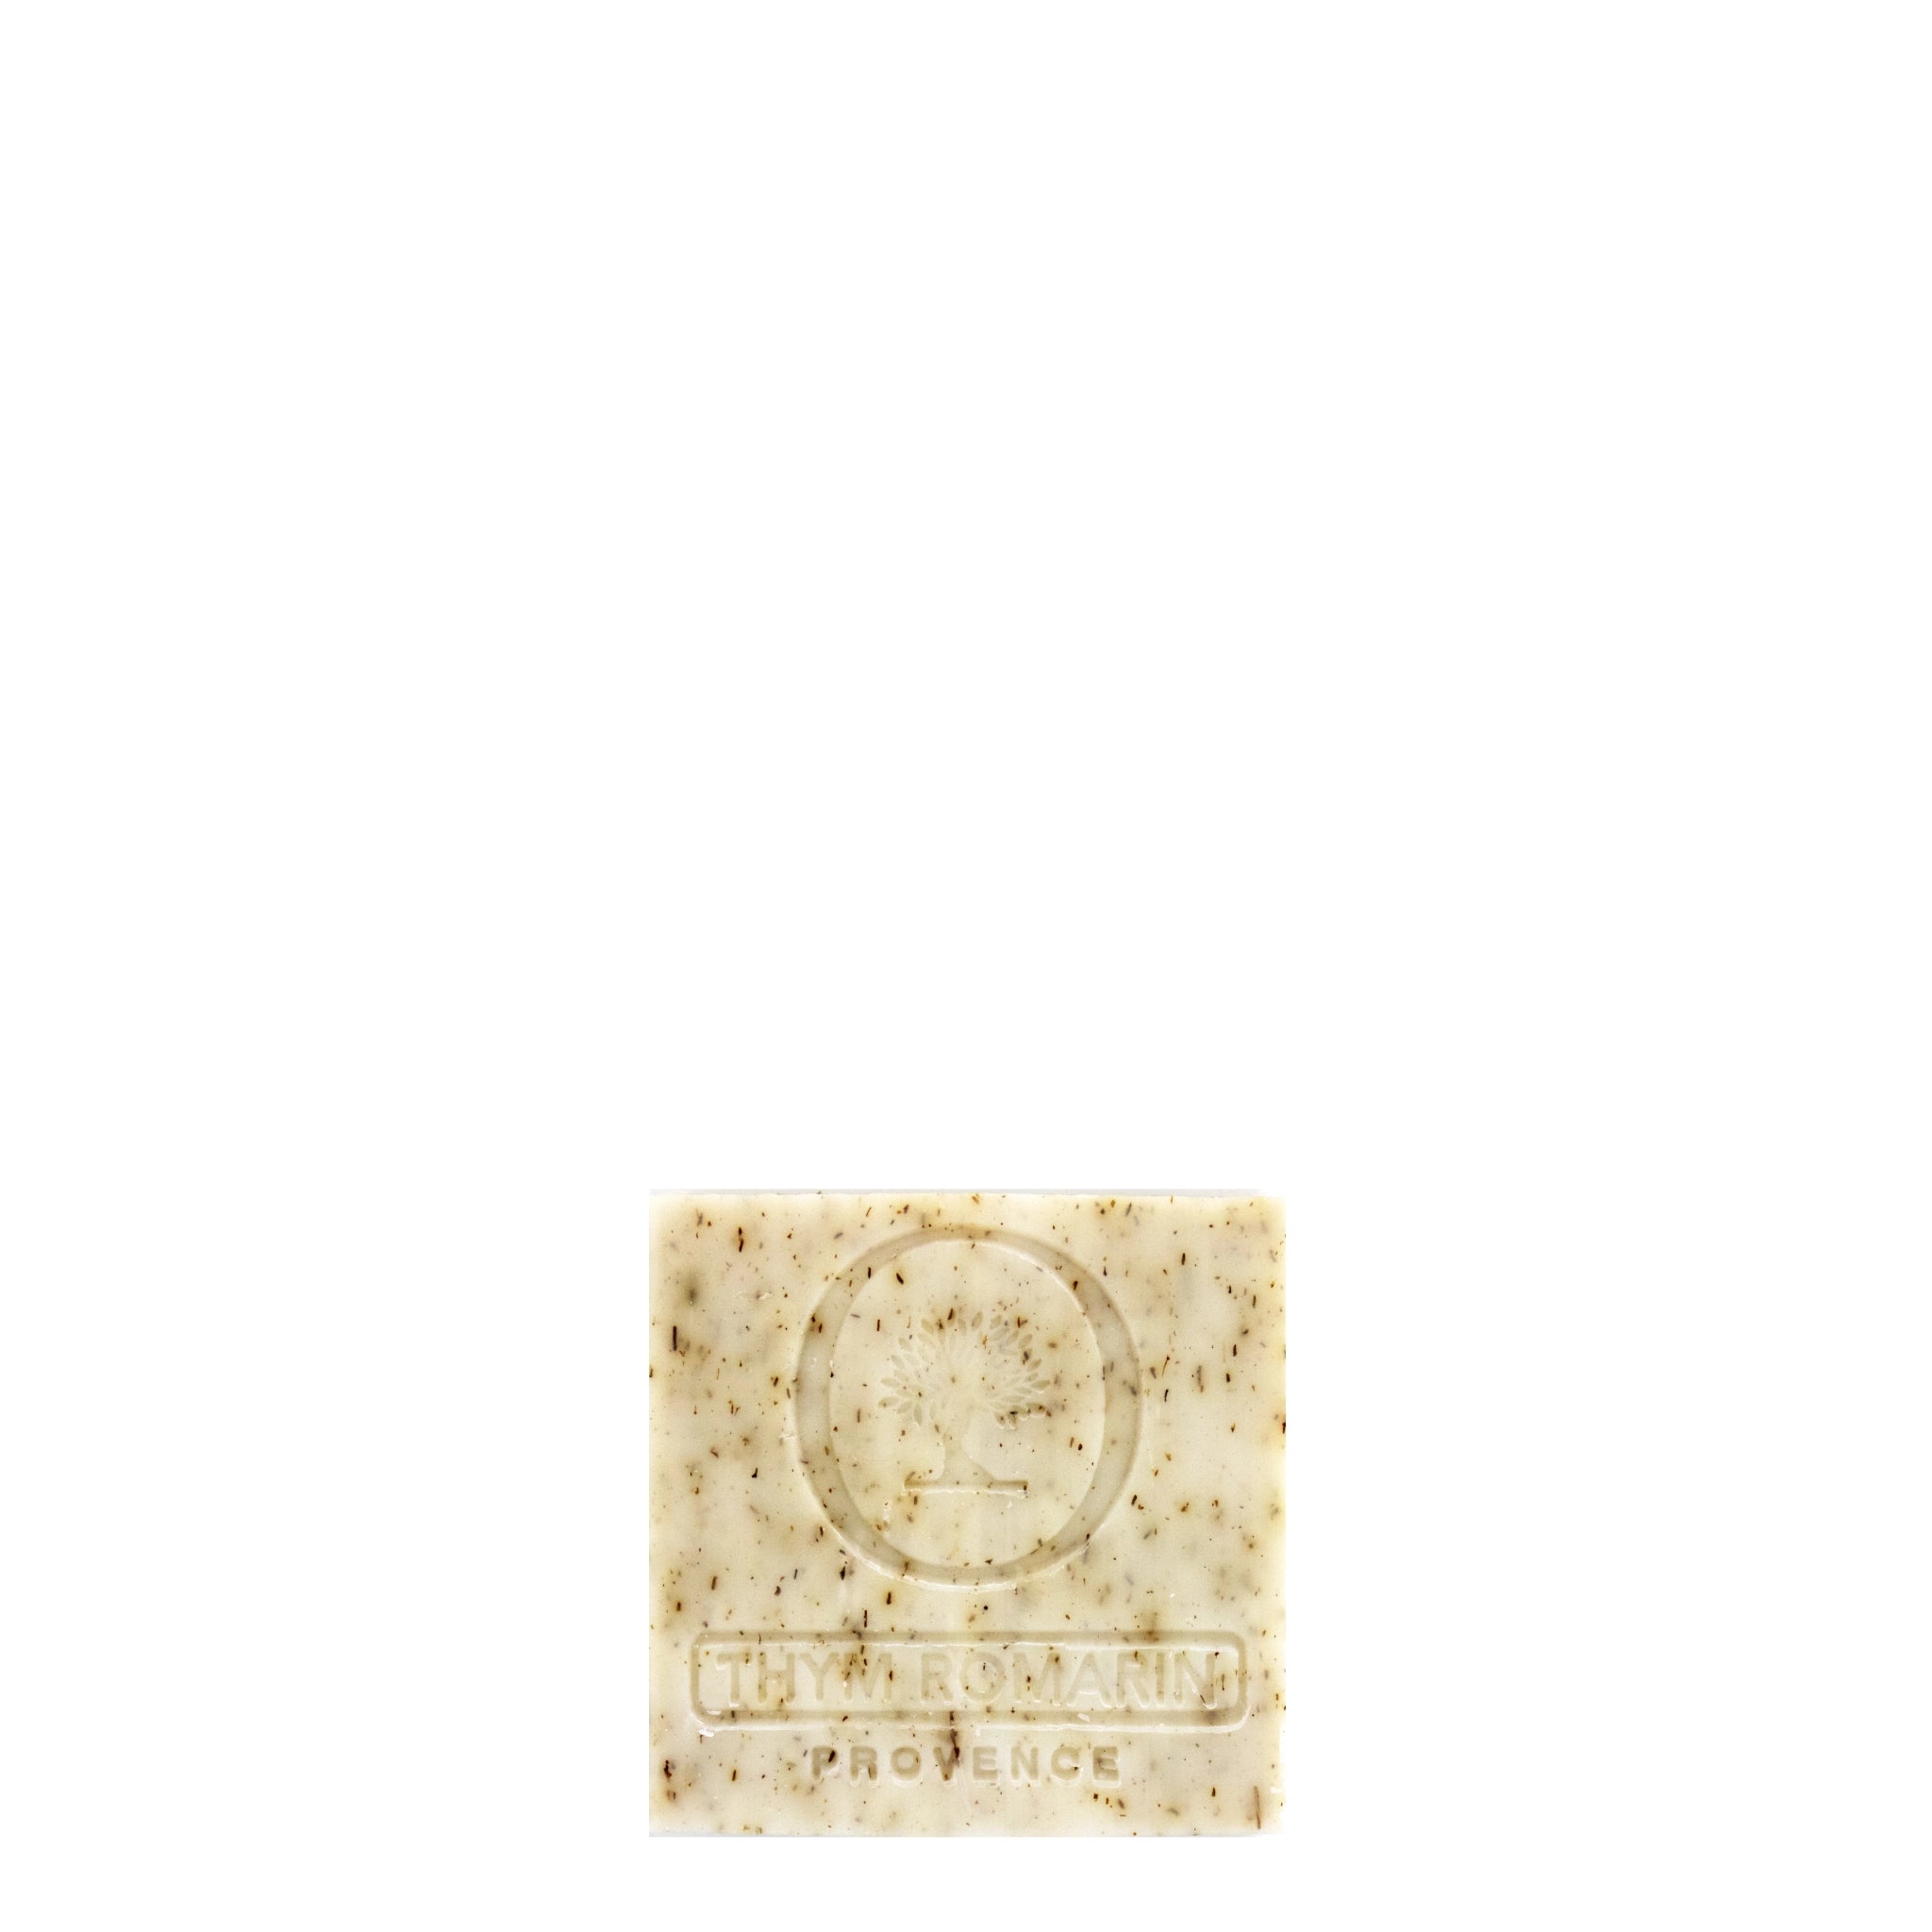 Fransk kvadratisk sæbe med timian, rosmarin og lavendel, Oliviers & Co